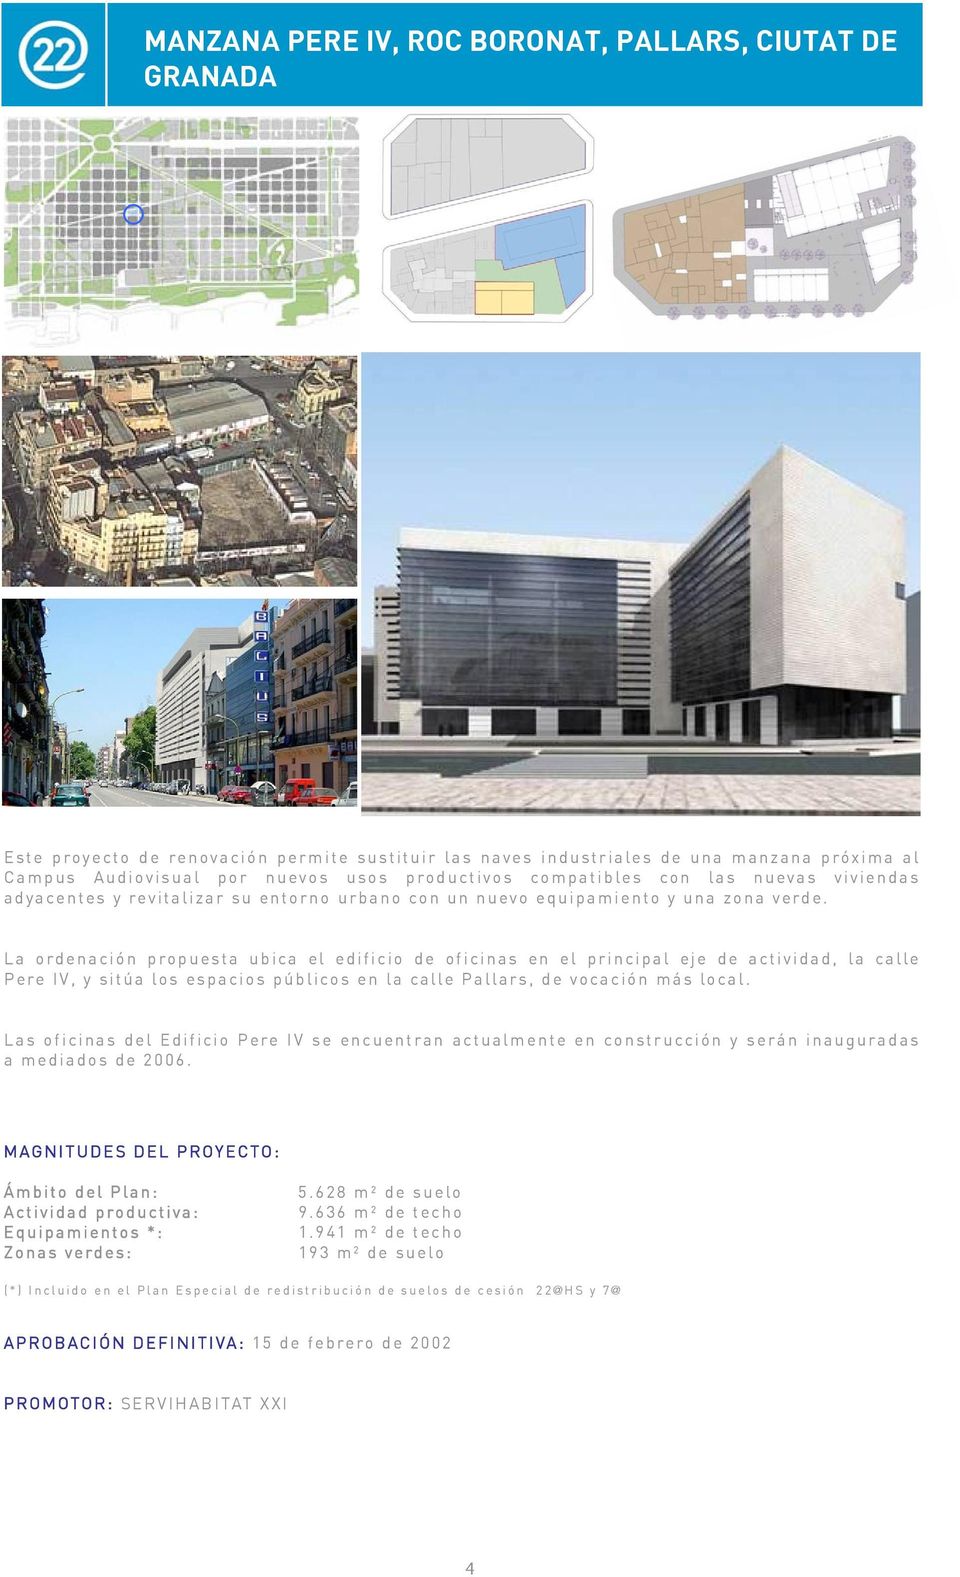 La ordenación propuesta ubica el edificio de oficinas en el principal eje de actividad, la calle Pere IV, y sitúa los espacios públicos en la calle Pallars, de vocación más local.